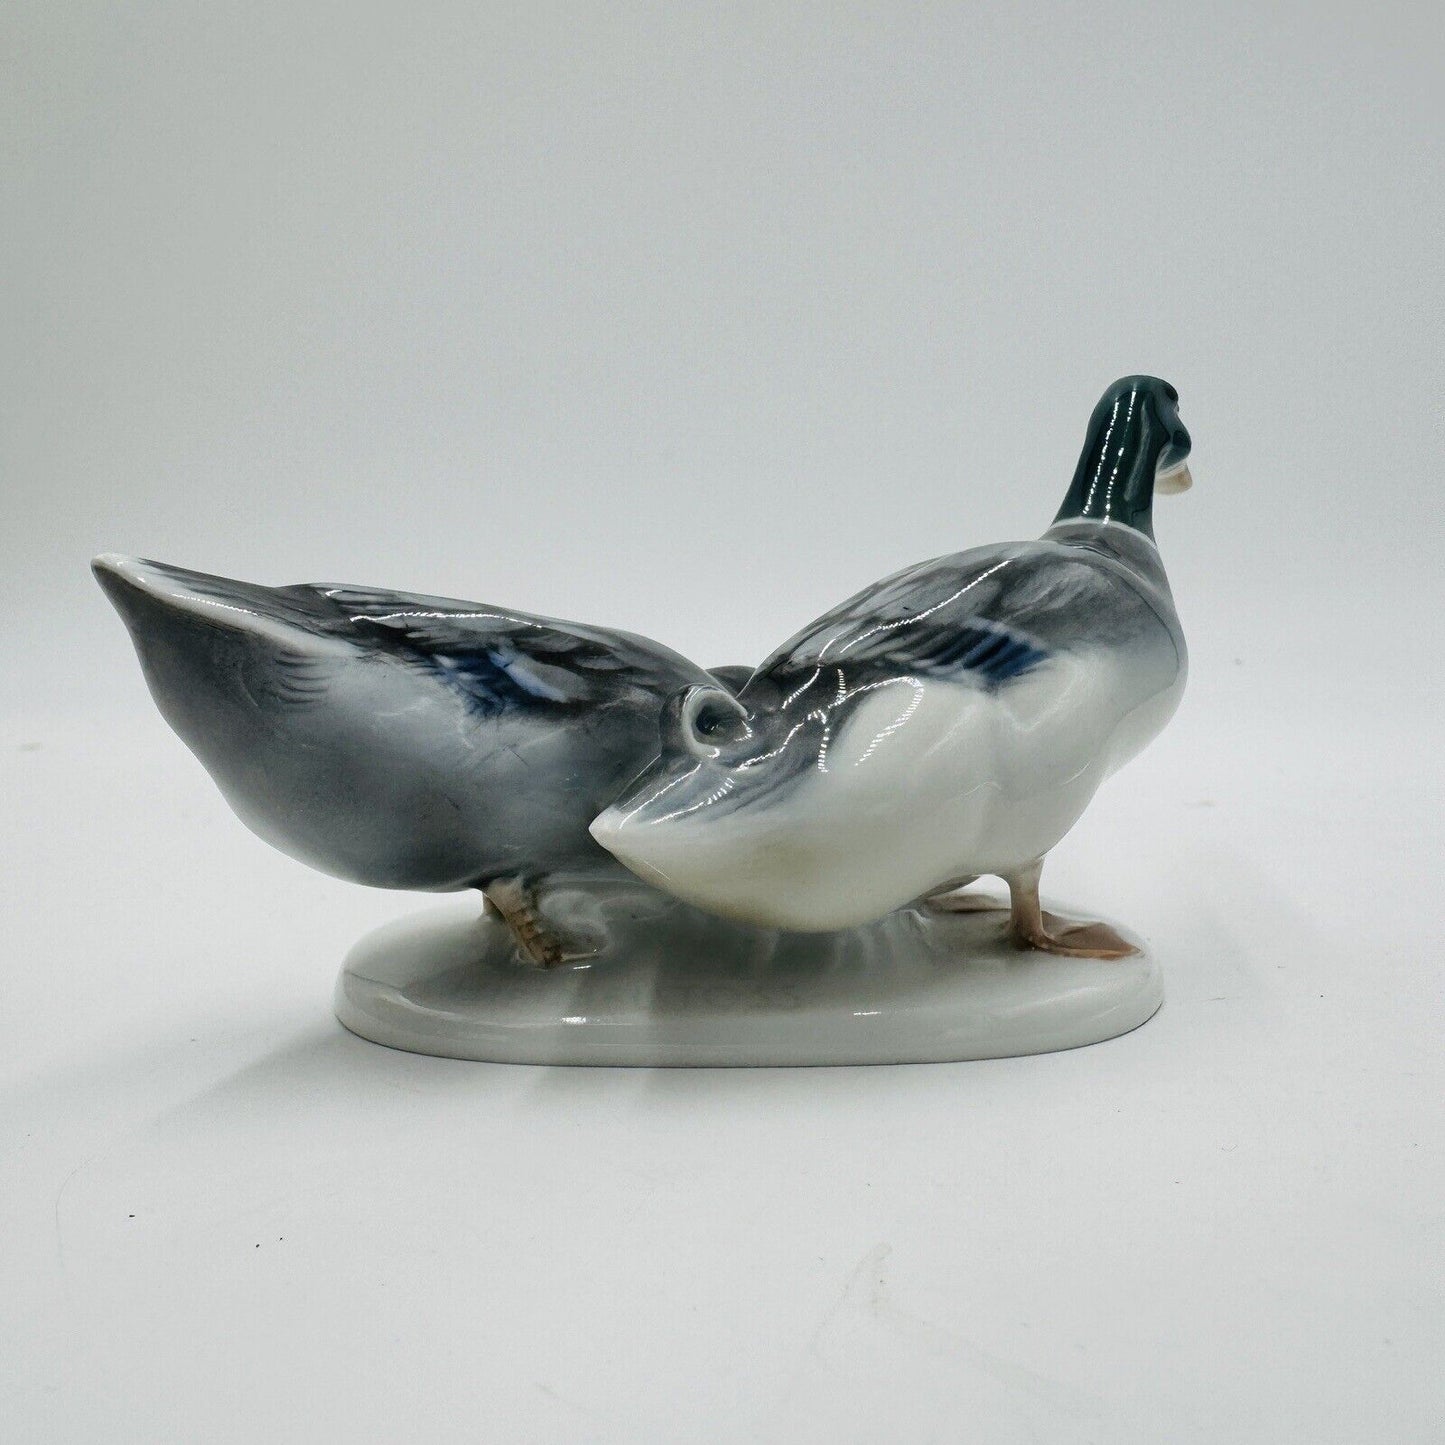 Vintage Rosenthal Porcelain Germany Himmelstoss ducks figurine 3” x 6”